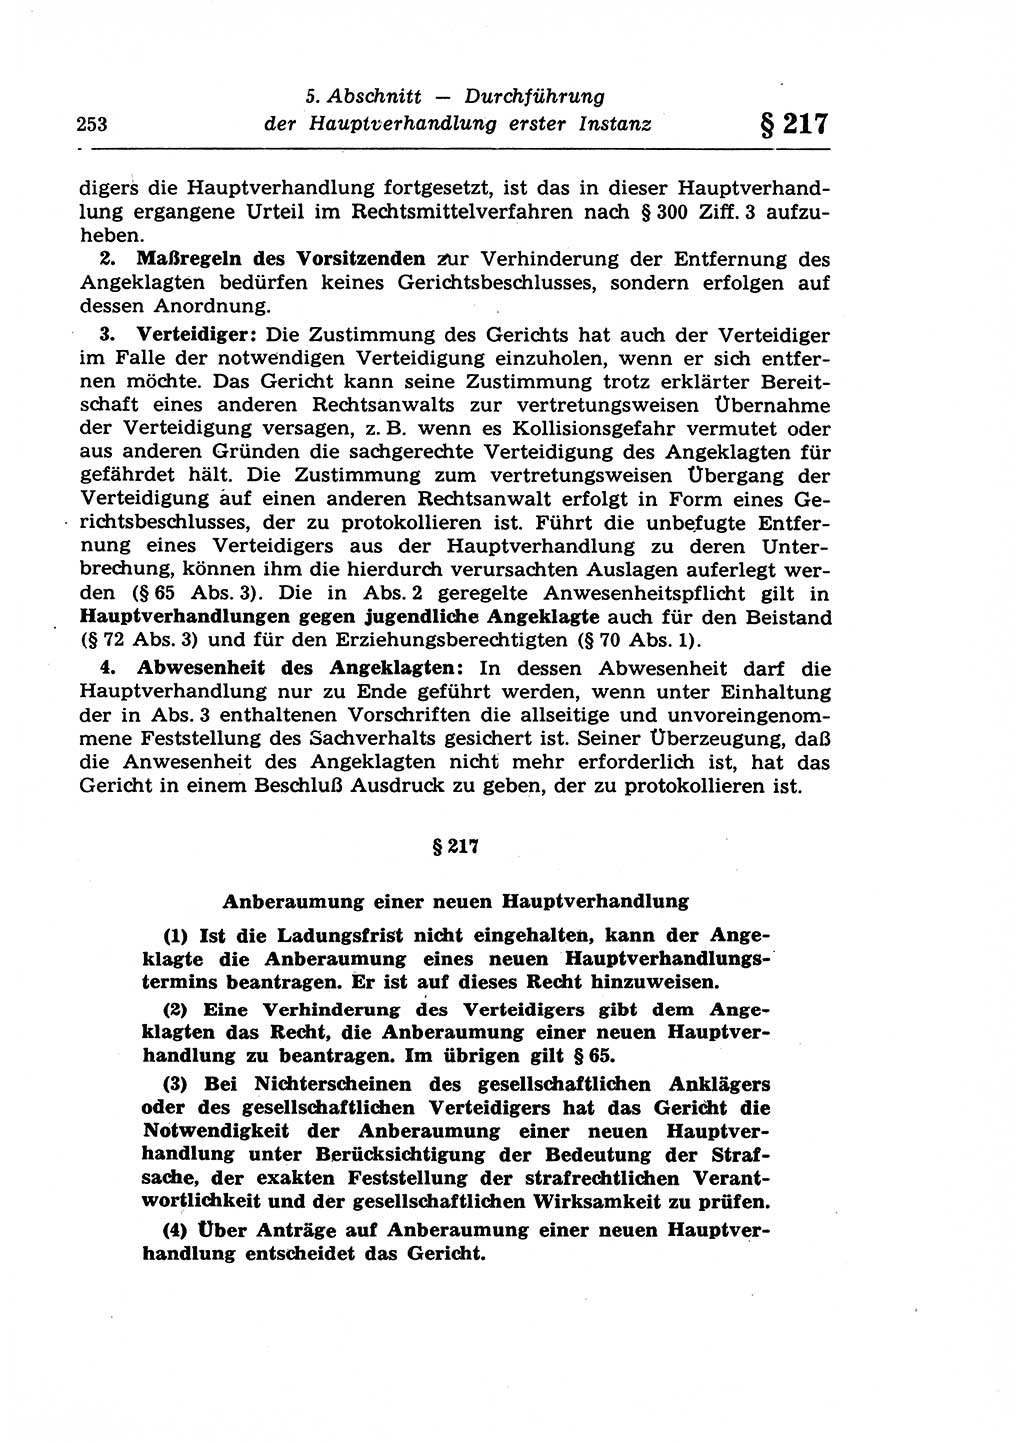 Strafprozeßrecht der DDR (Deutsche Demokratische Republik), Lehrkommentar zur Strafprozeßordnung (StPO) 1968, Seite 253 (Strafprozeßr. DDR Lehrkomm. StPO 19688, S. 253)